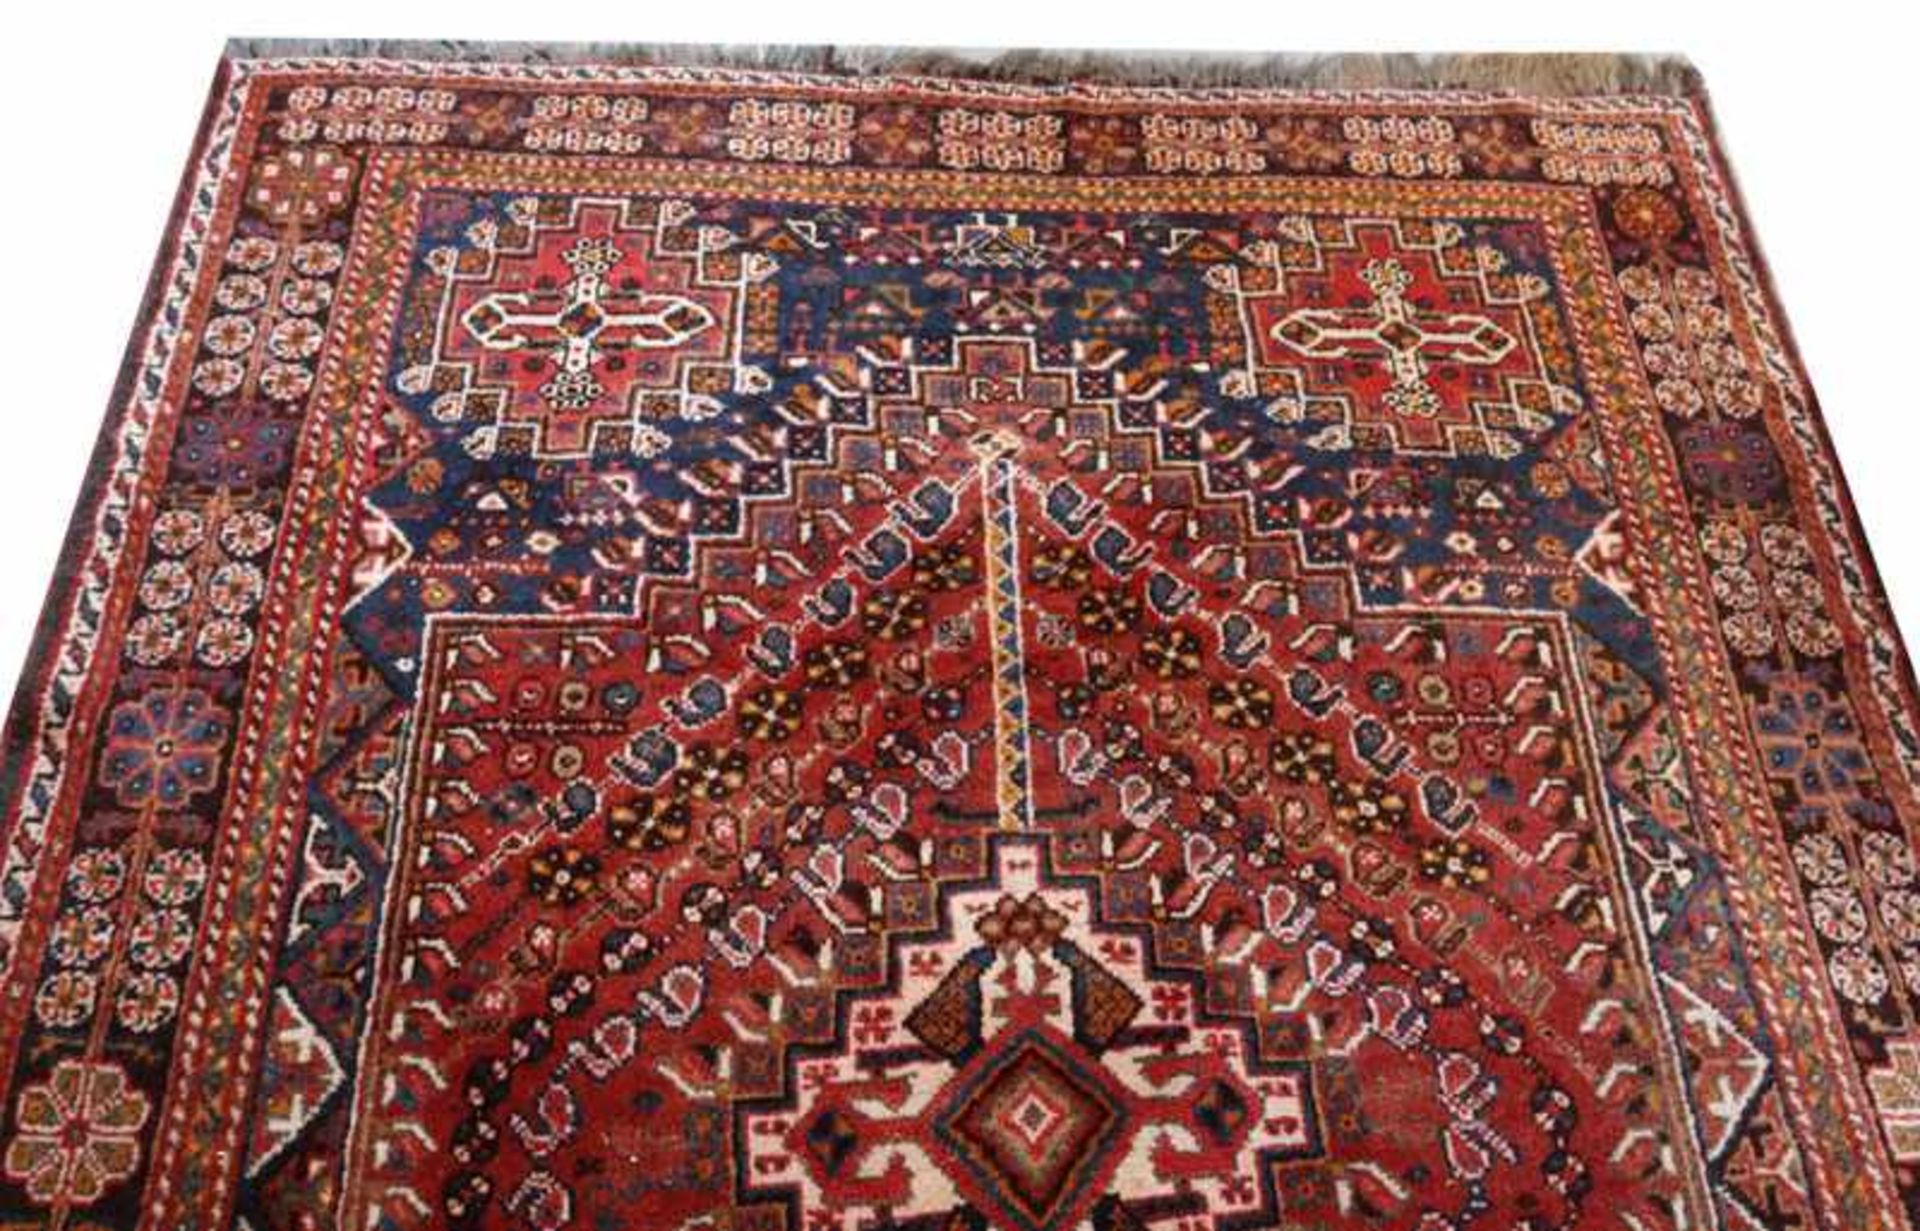 Teppich, Iran, rot/blau/bunt, Gebrauchsspuren, 255 cm x 175 cm